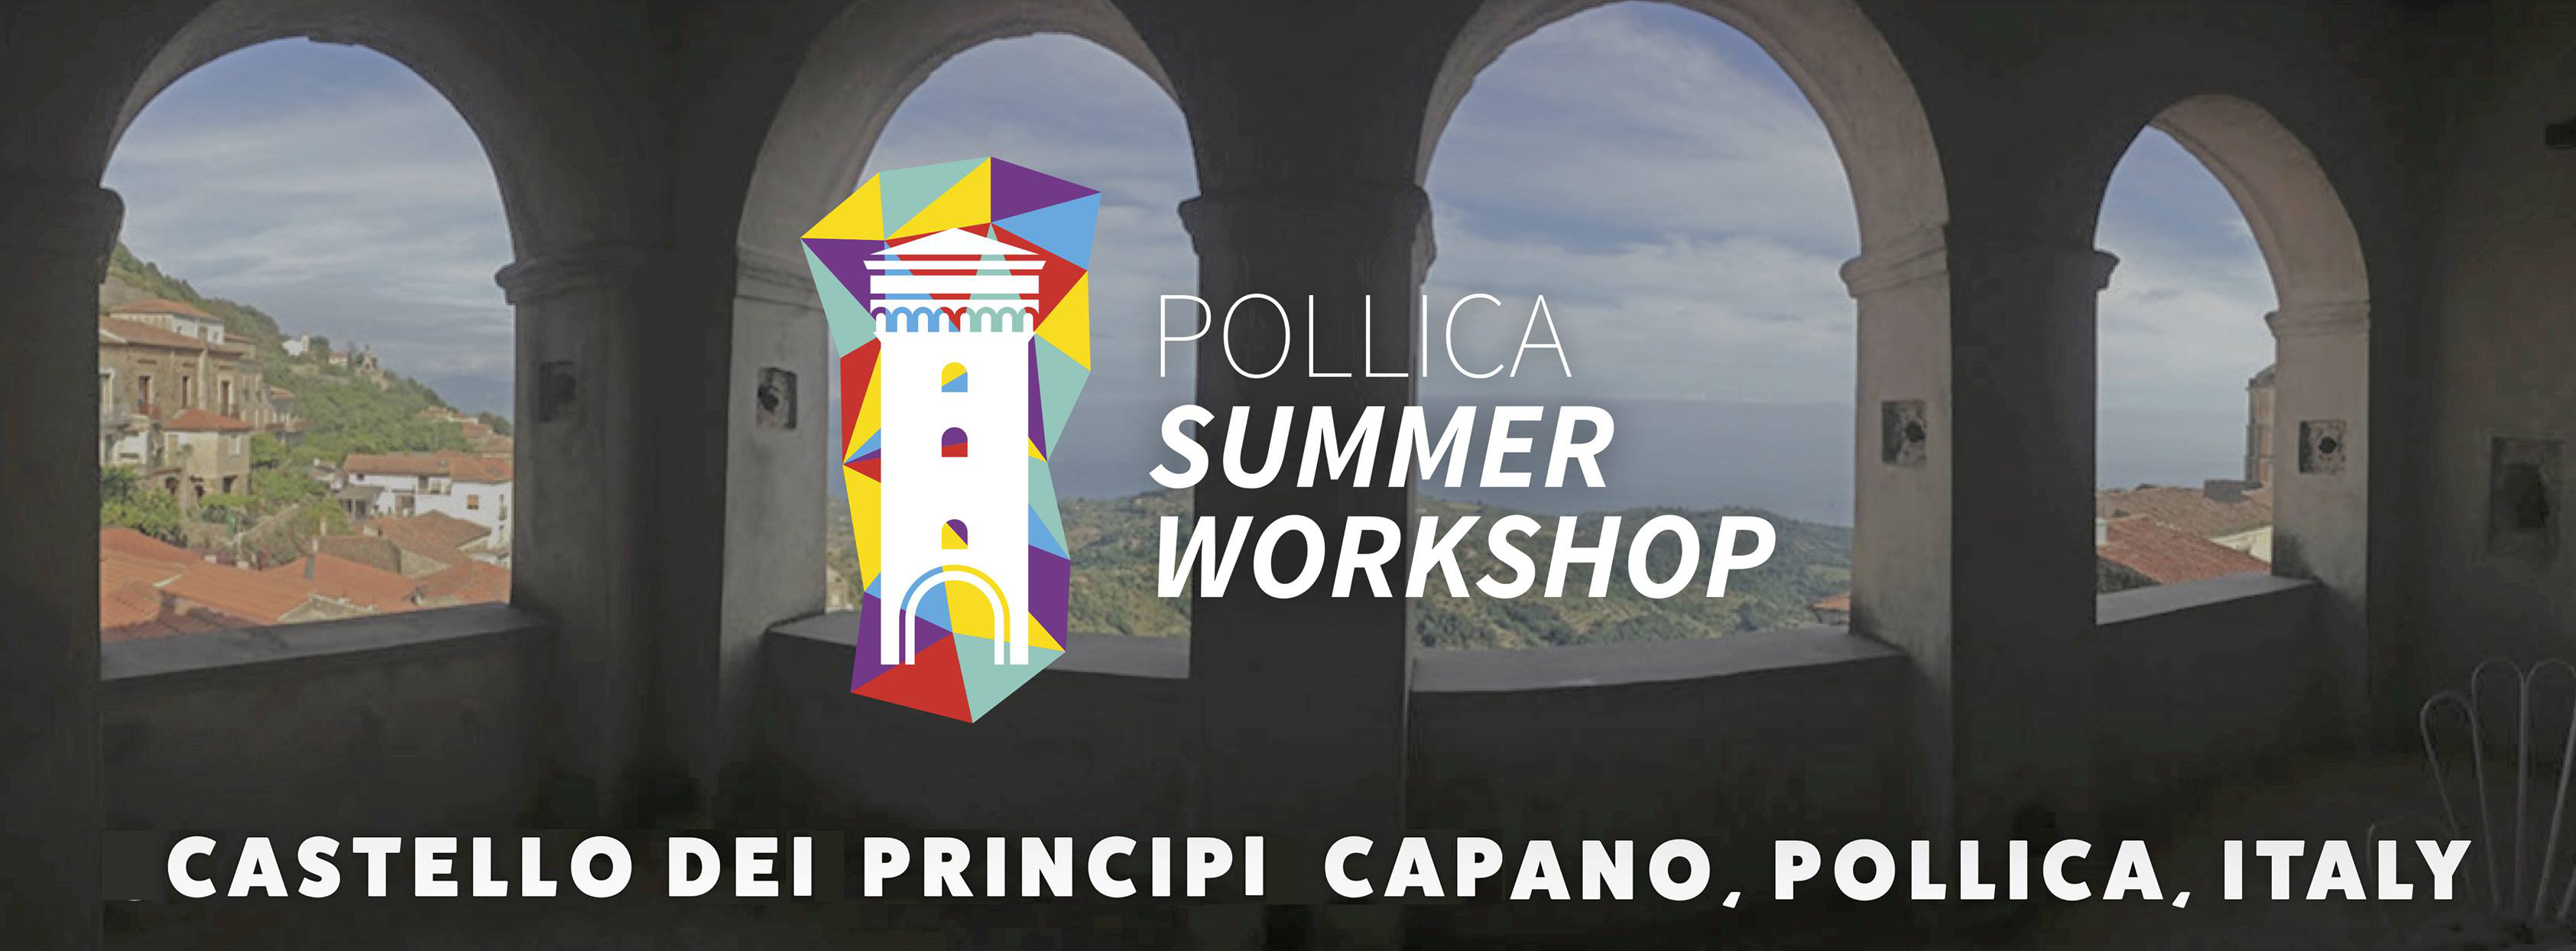 Pollica Summer Workshop